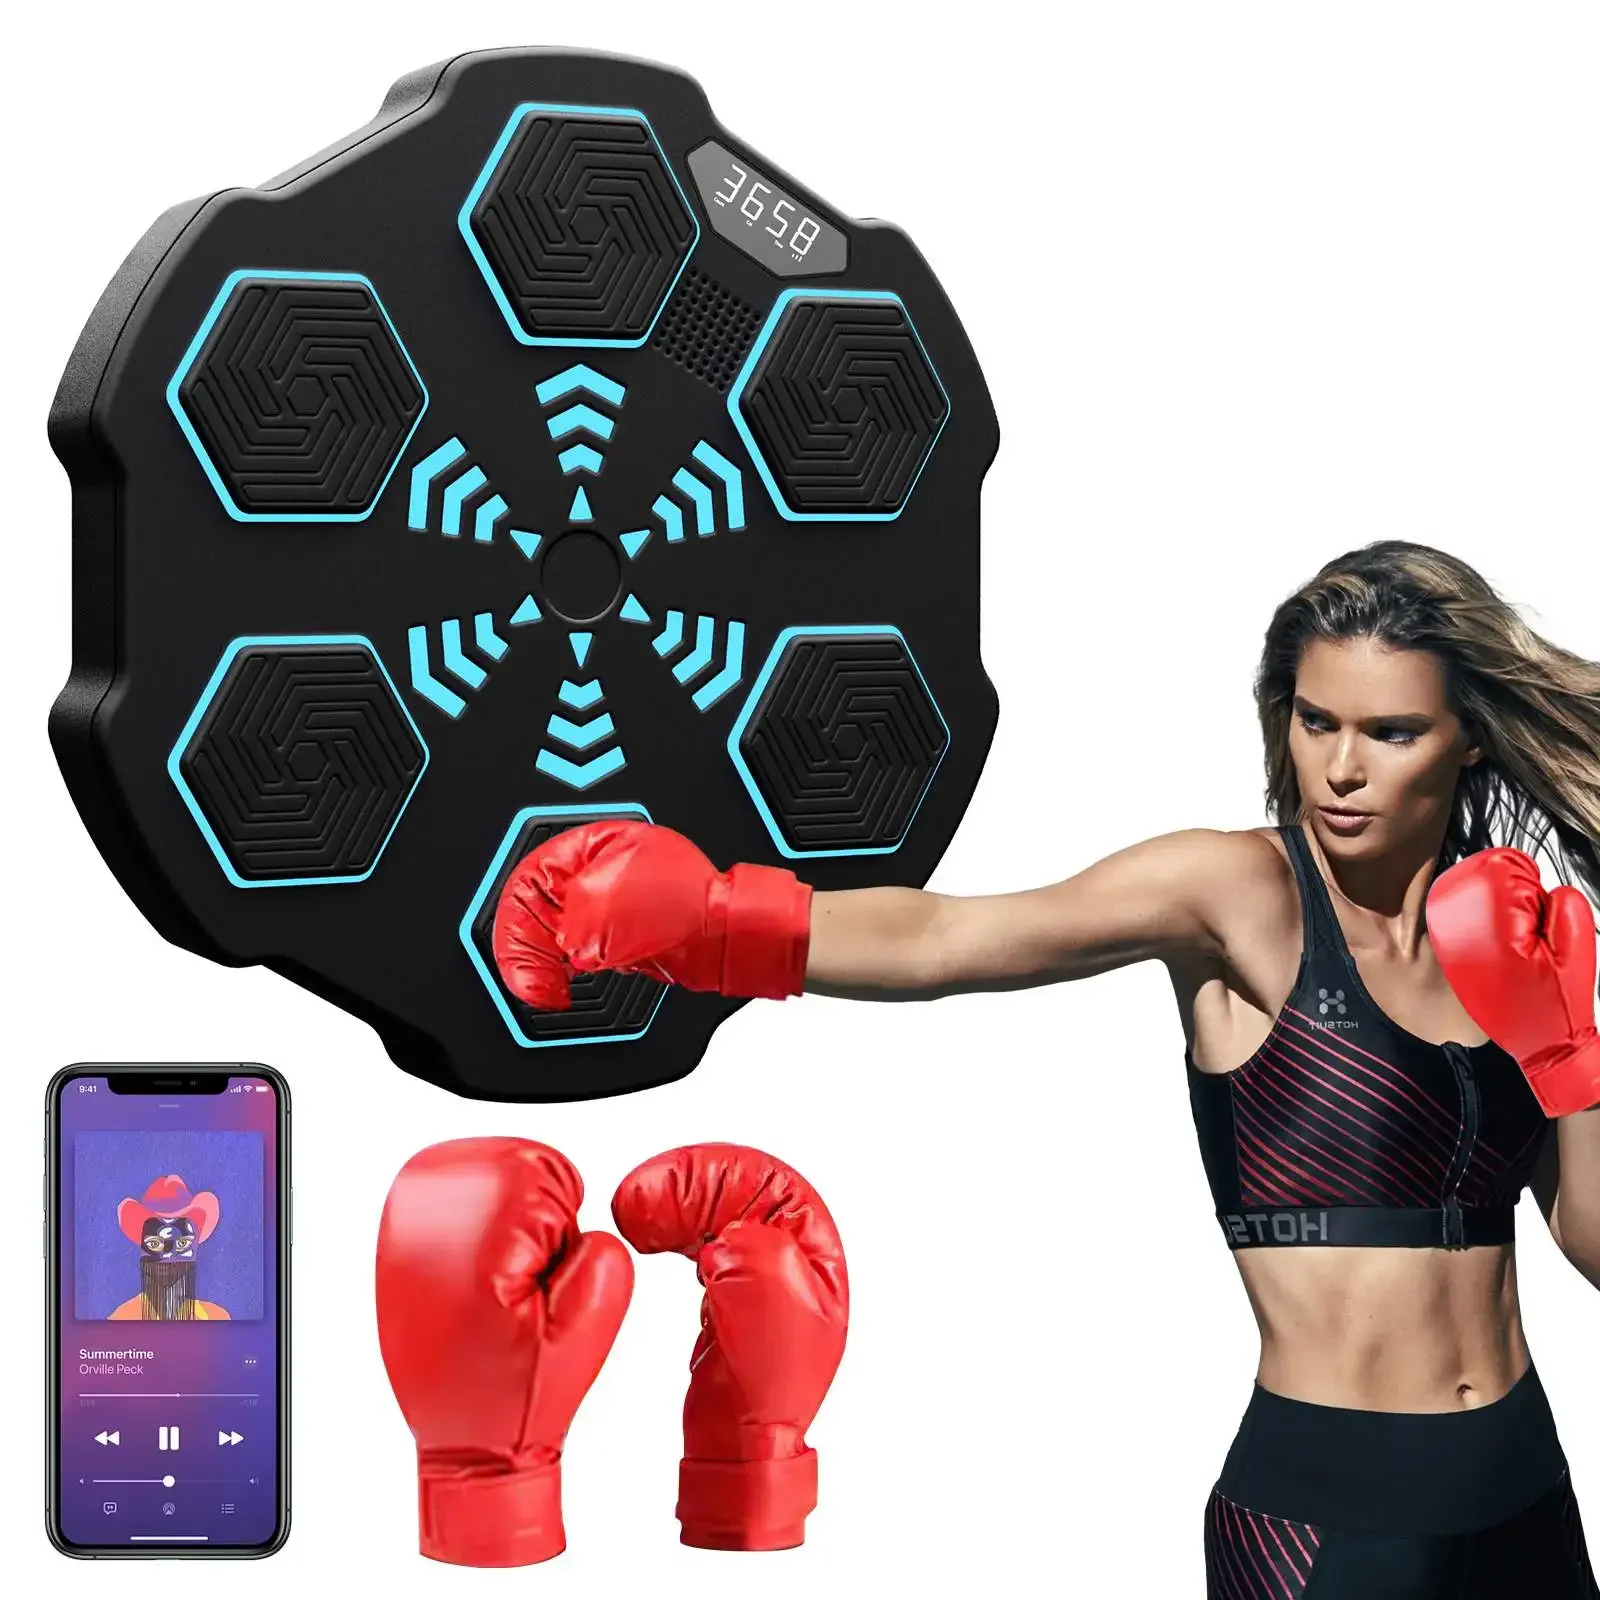 НОВЫЙ музыкальный боксерский тренажер, настенная мишень, боксерское оборудование со светодиодной подсветкой, боксерские перчатки для любительских домашних тренировок.